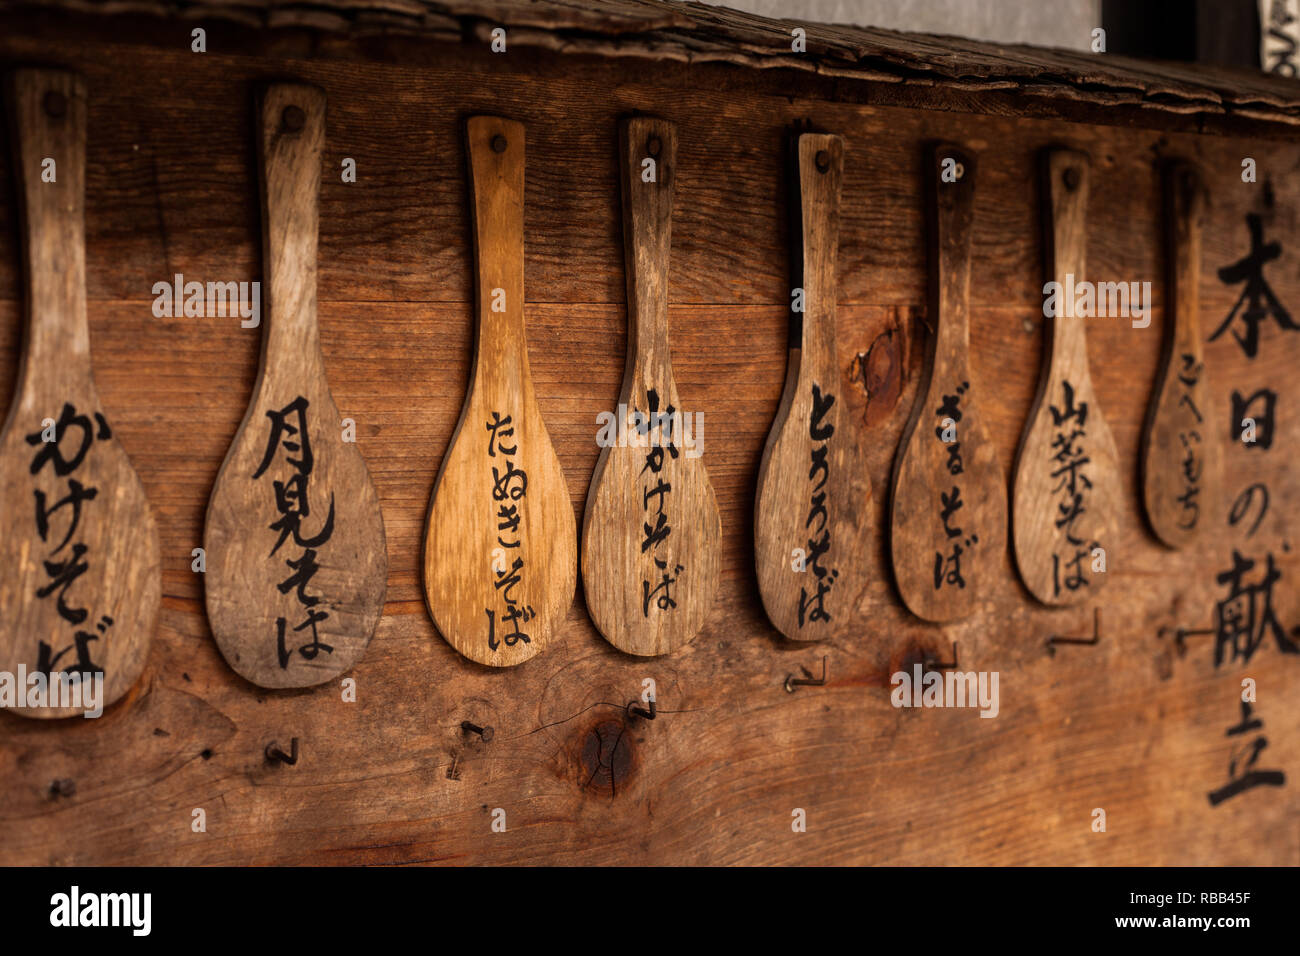 L'écriture japonaise sur les cuillères en bois accroché au mur Banque D'Images